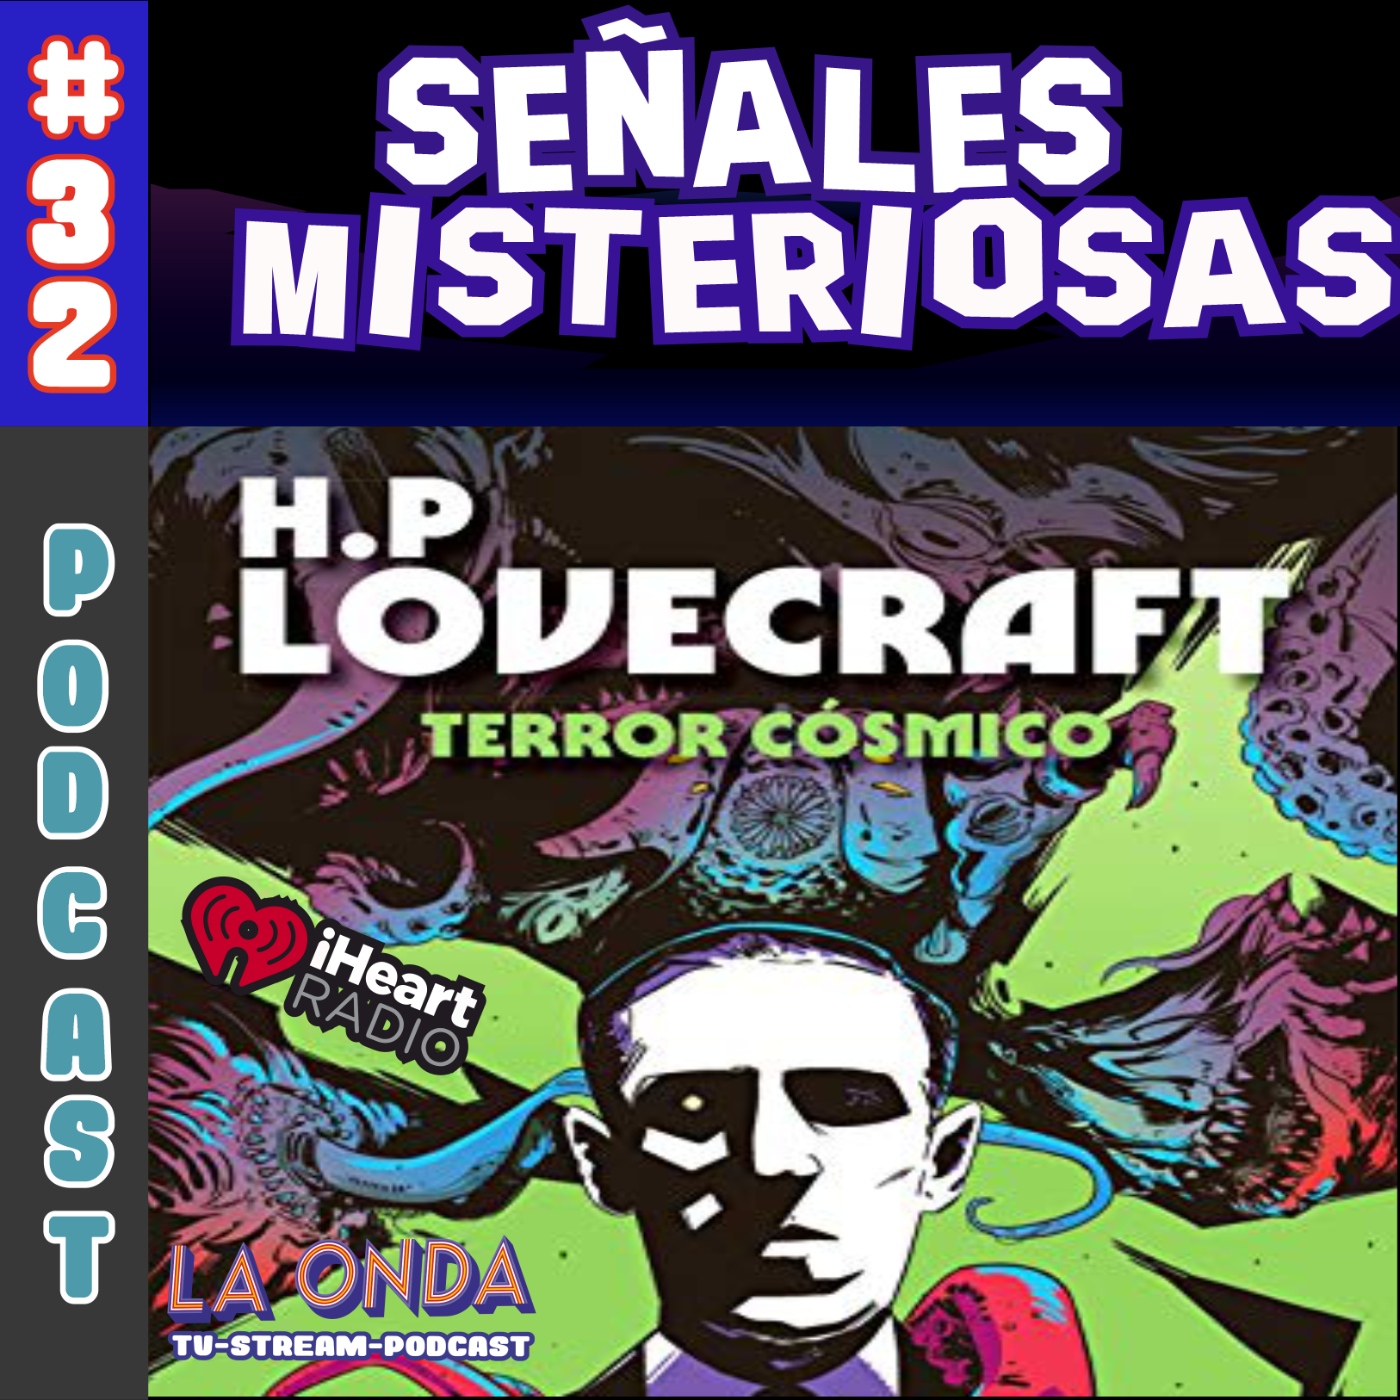  Terror Cosmico - Señales Misteriosas - Podcast en iVoox